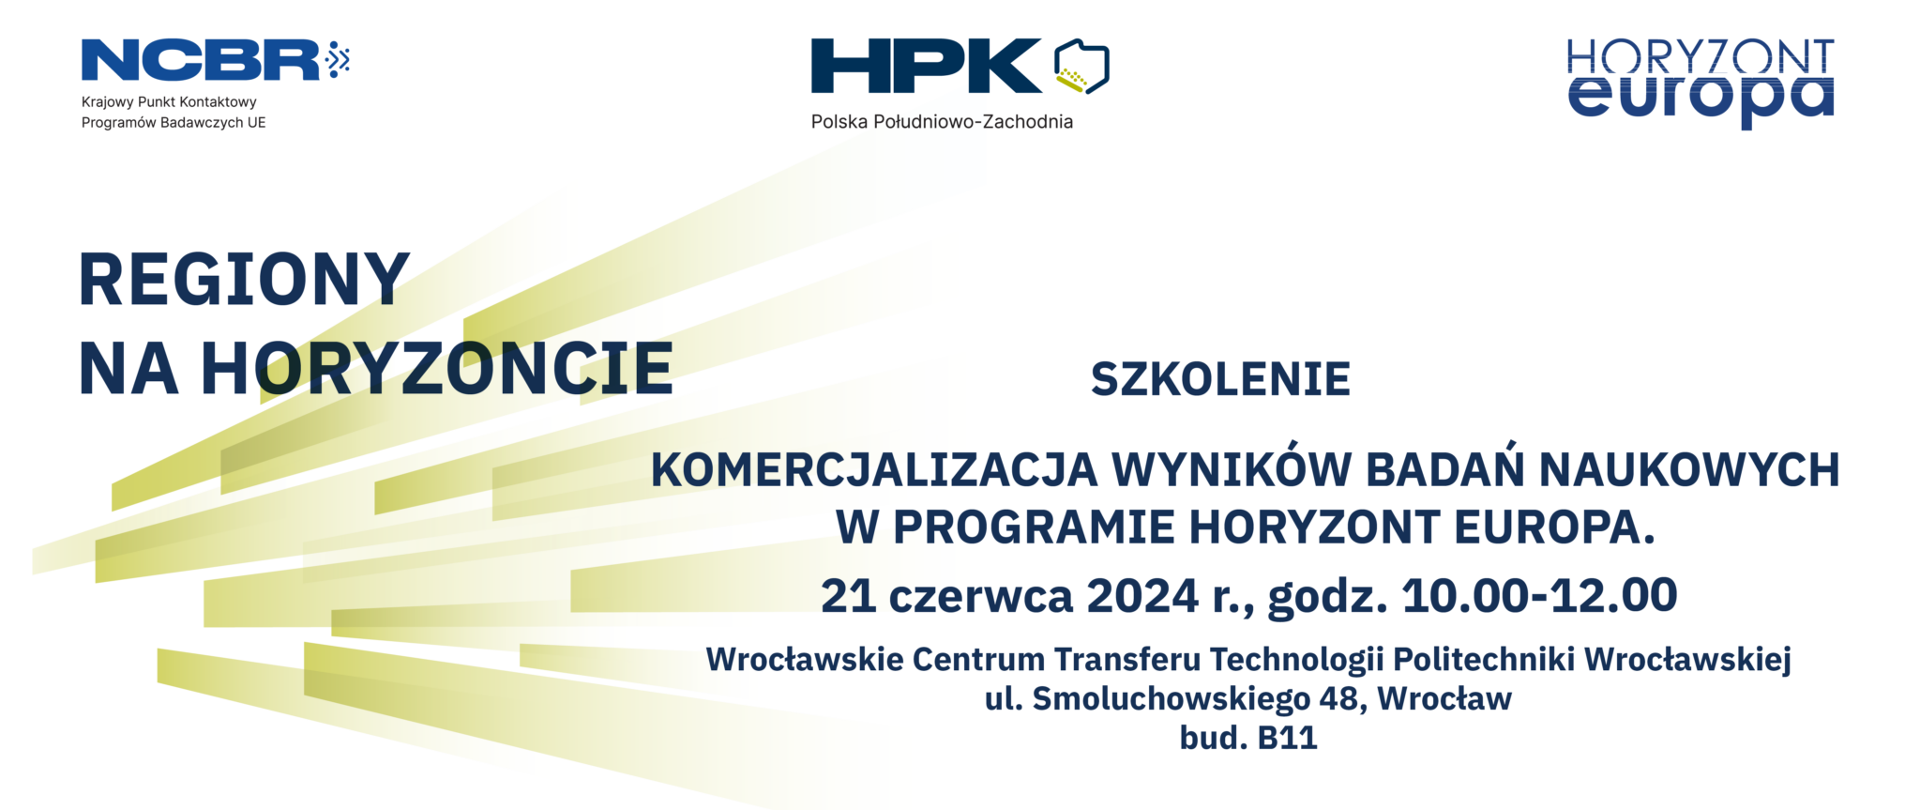 DKPK_RegionyNaHoryzoncie_pld_zach_21_06_24_www-1-2048x906